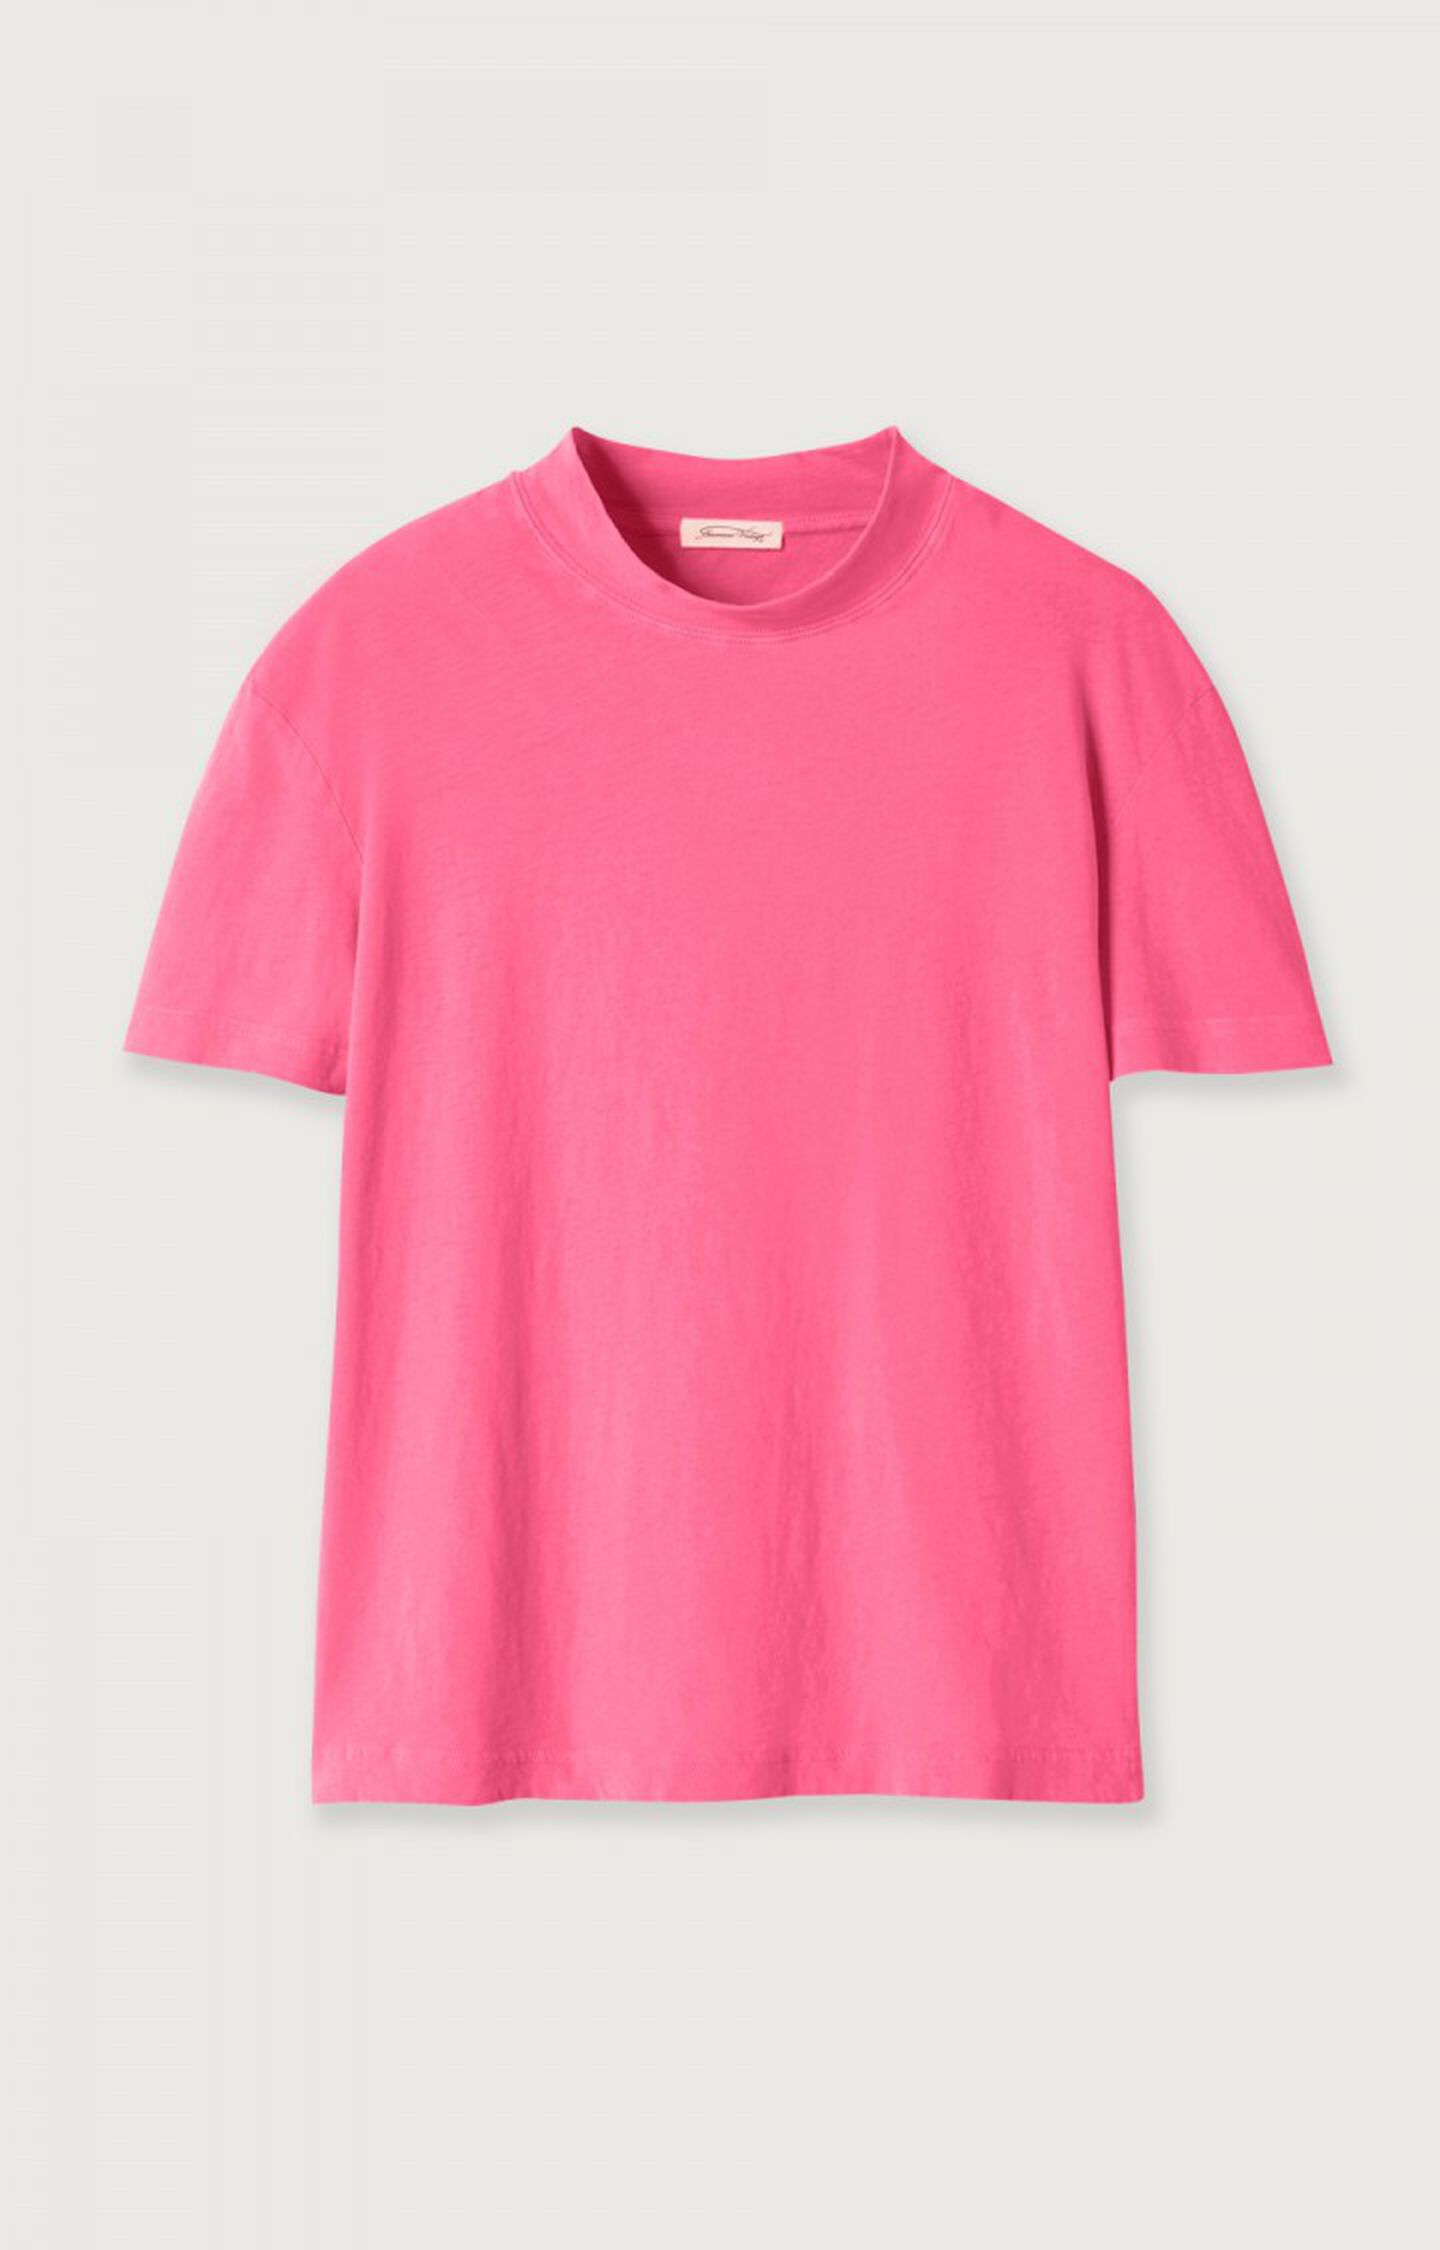 Rosa Ärmel American - Damen-t-shirt 17 Kurze NEONPINK H22 - Aksun Vintage |